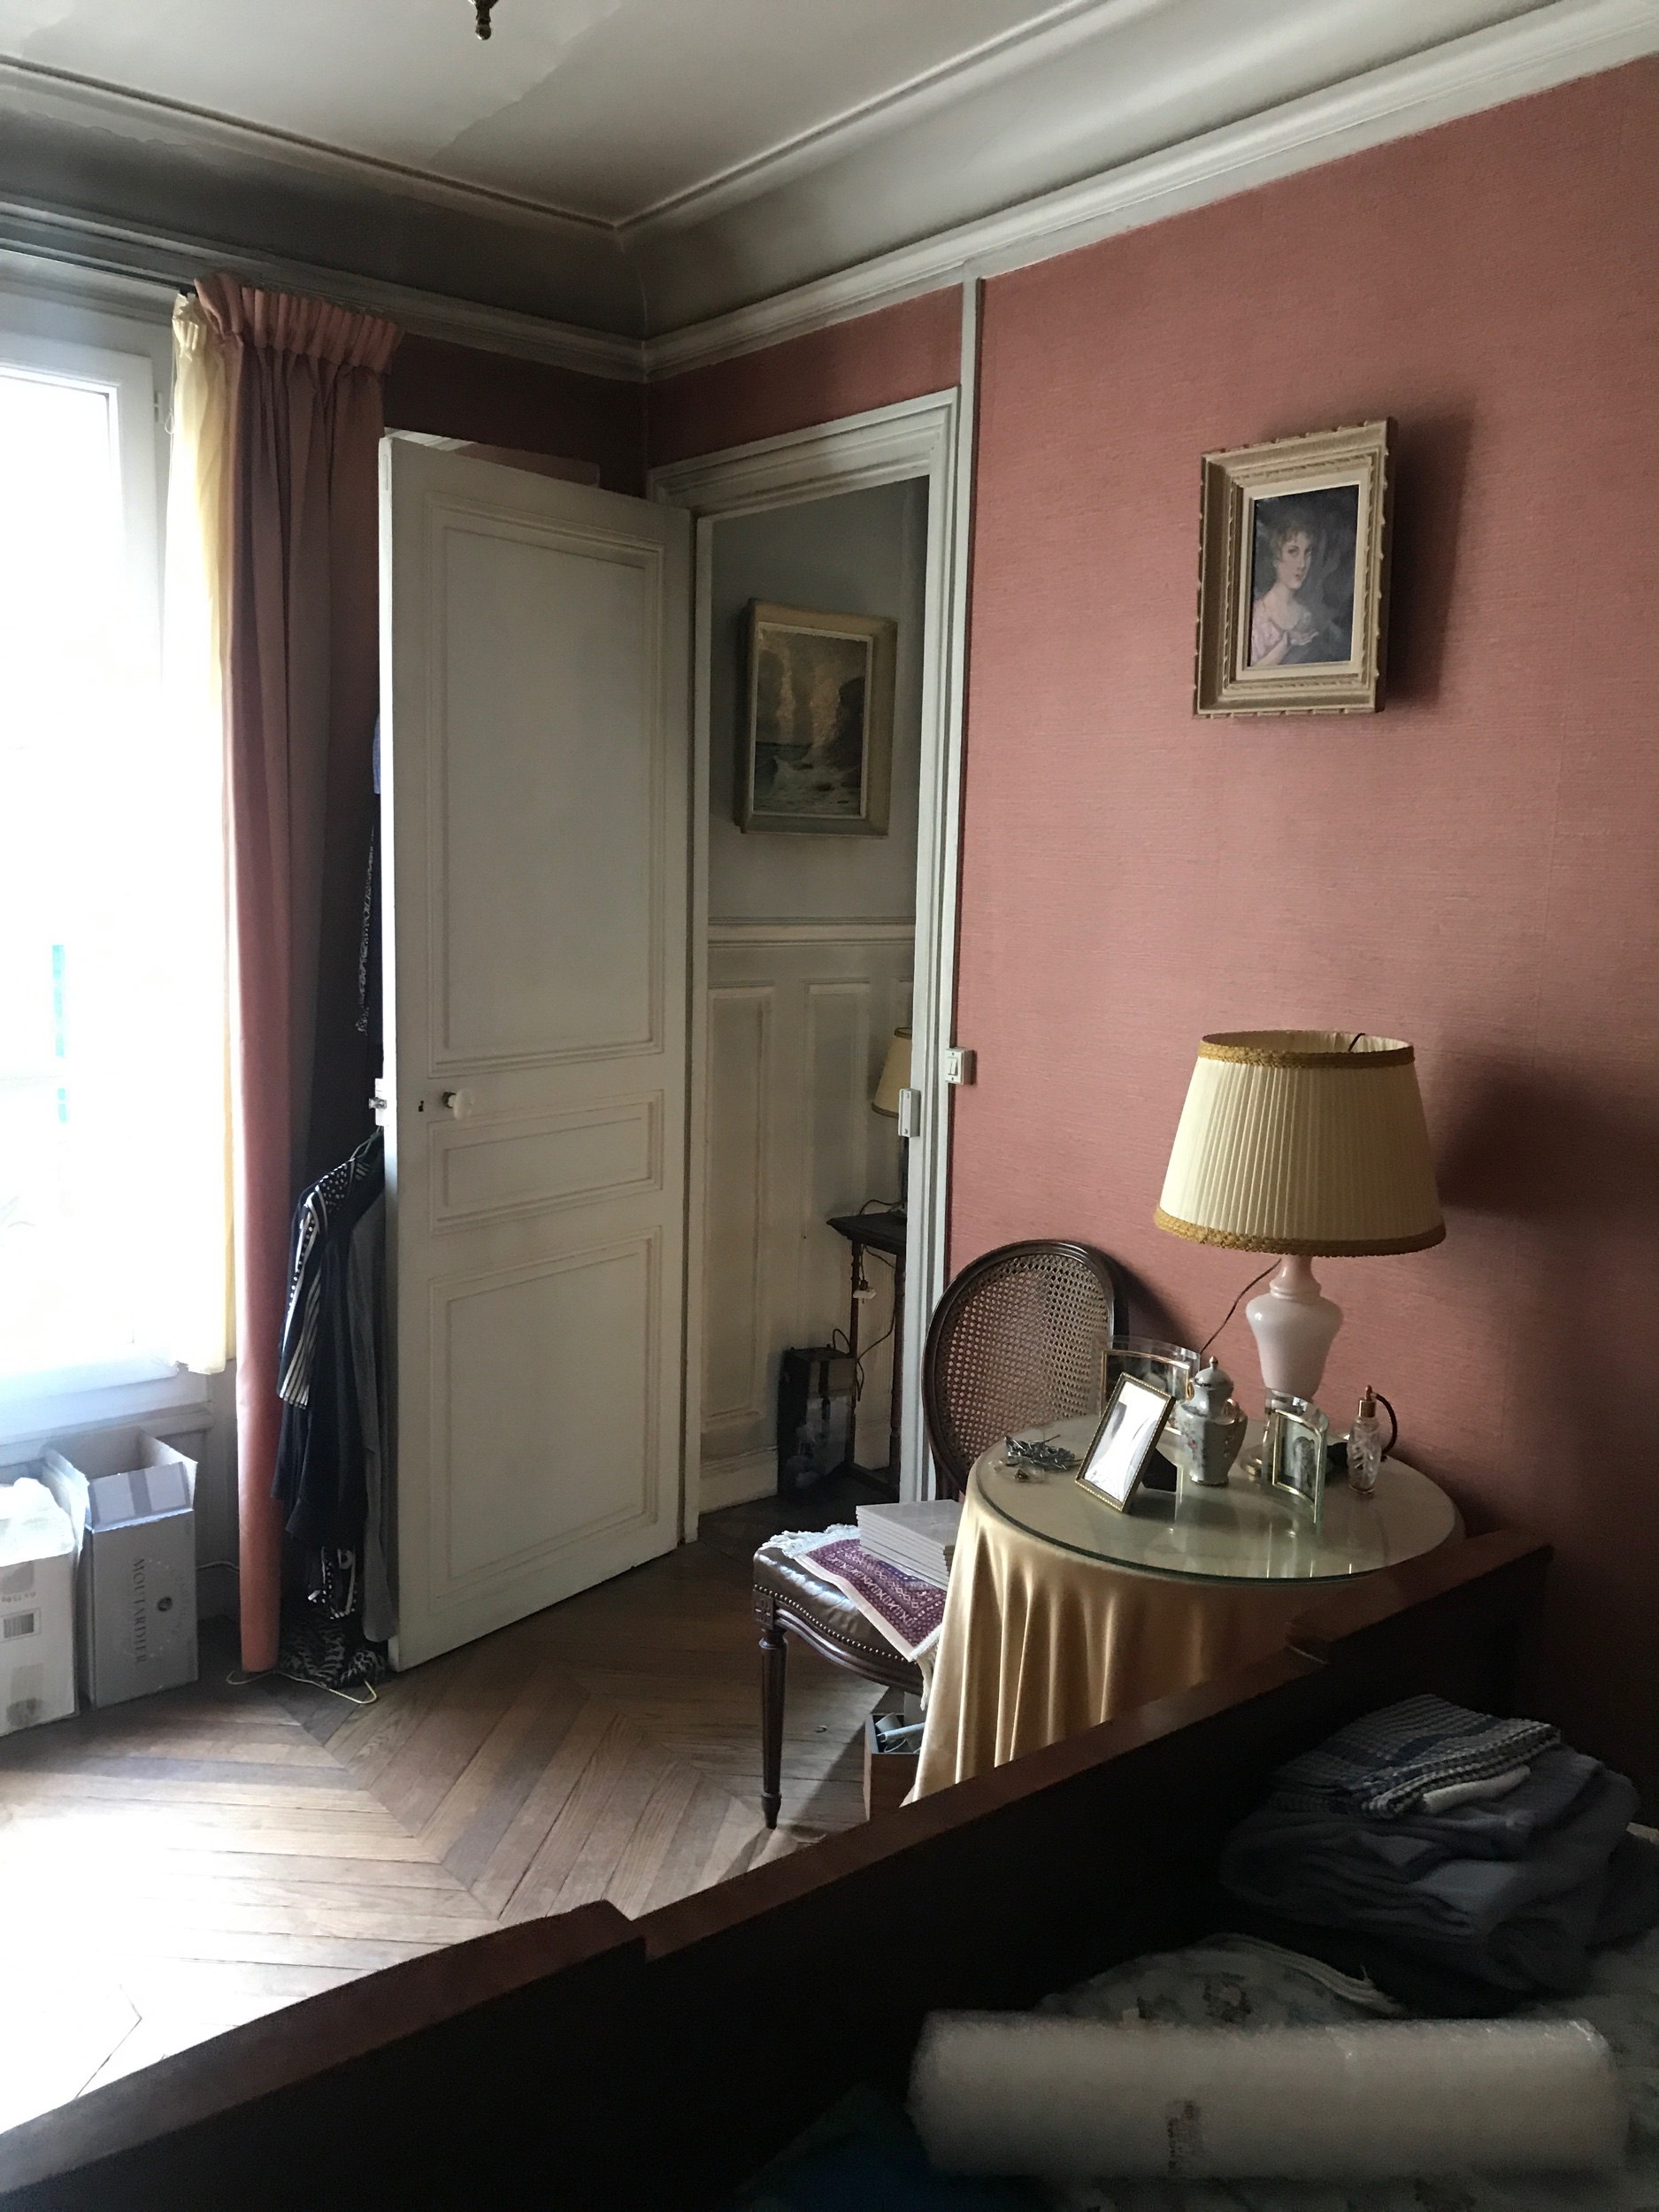 Original single doorway from inside the bedroom